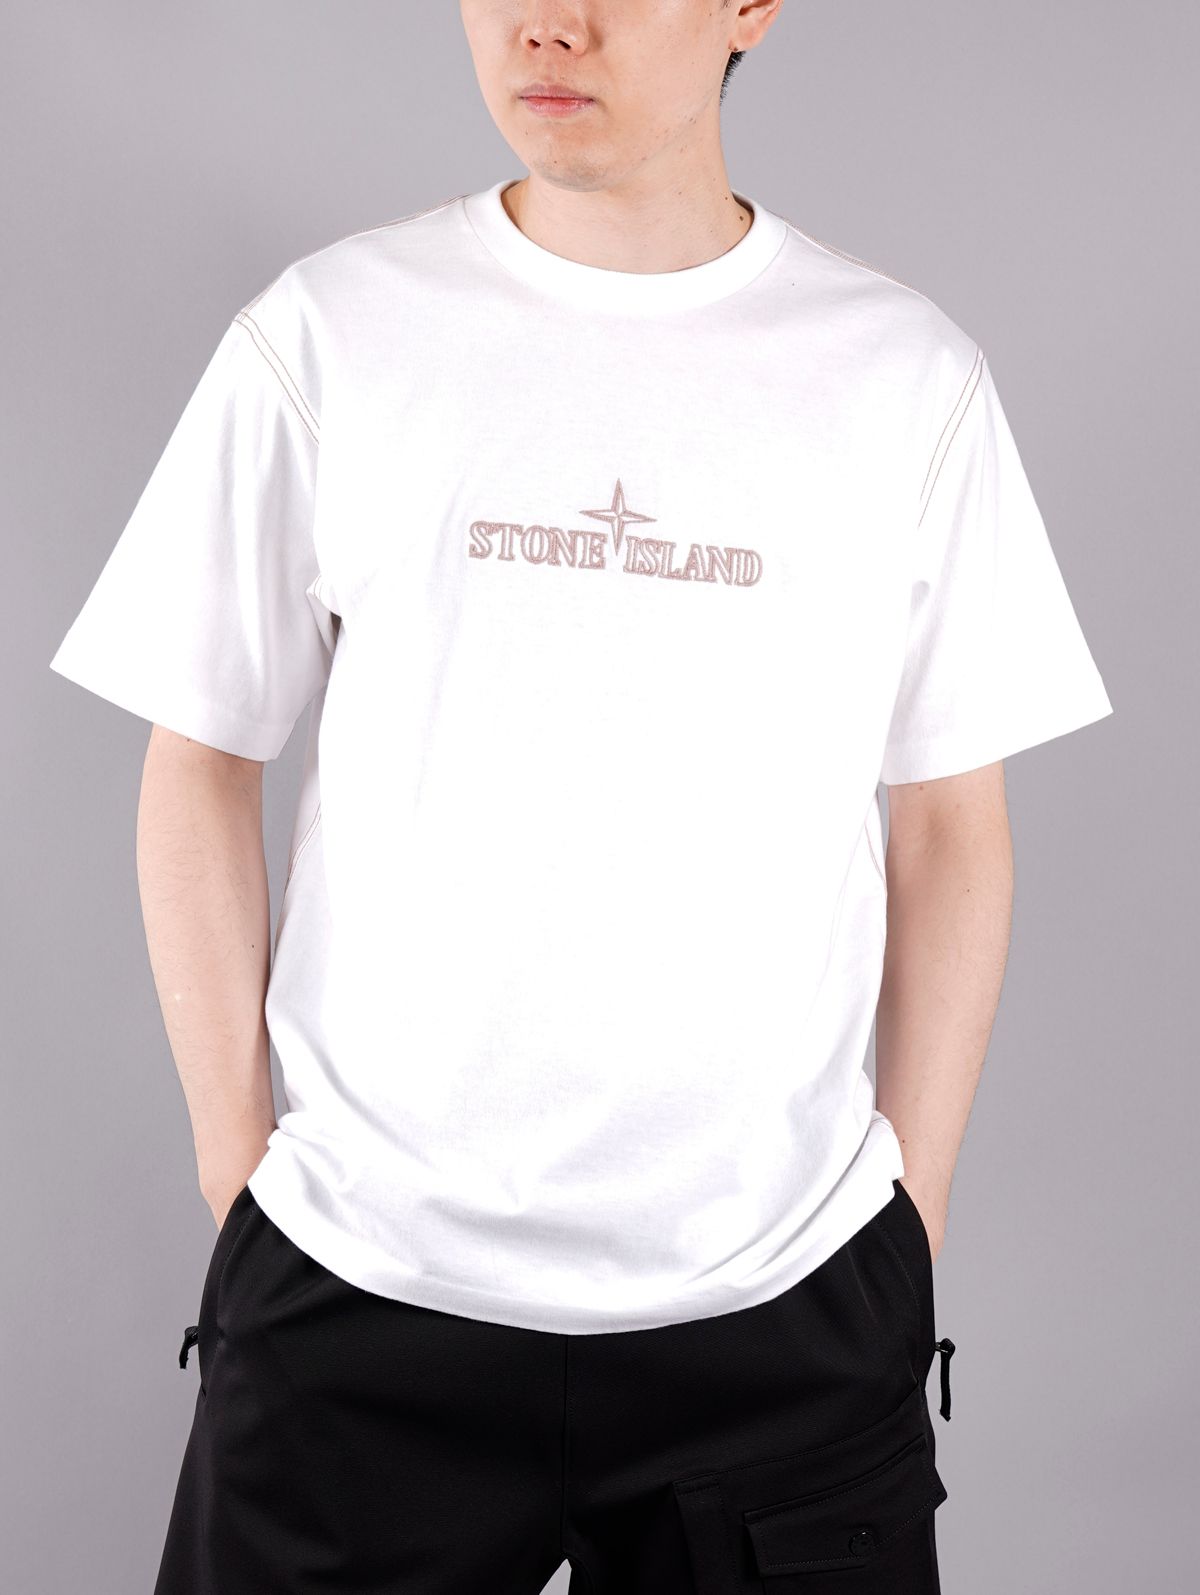 STONE ISLAND - T-SHIRT / Tシャツ (ブラック) | Confidence